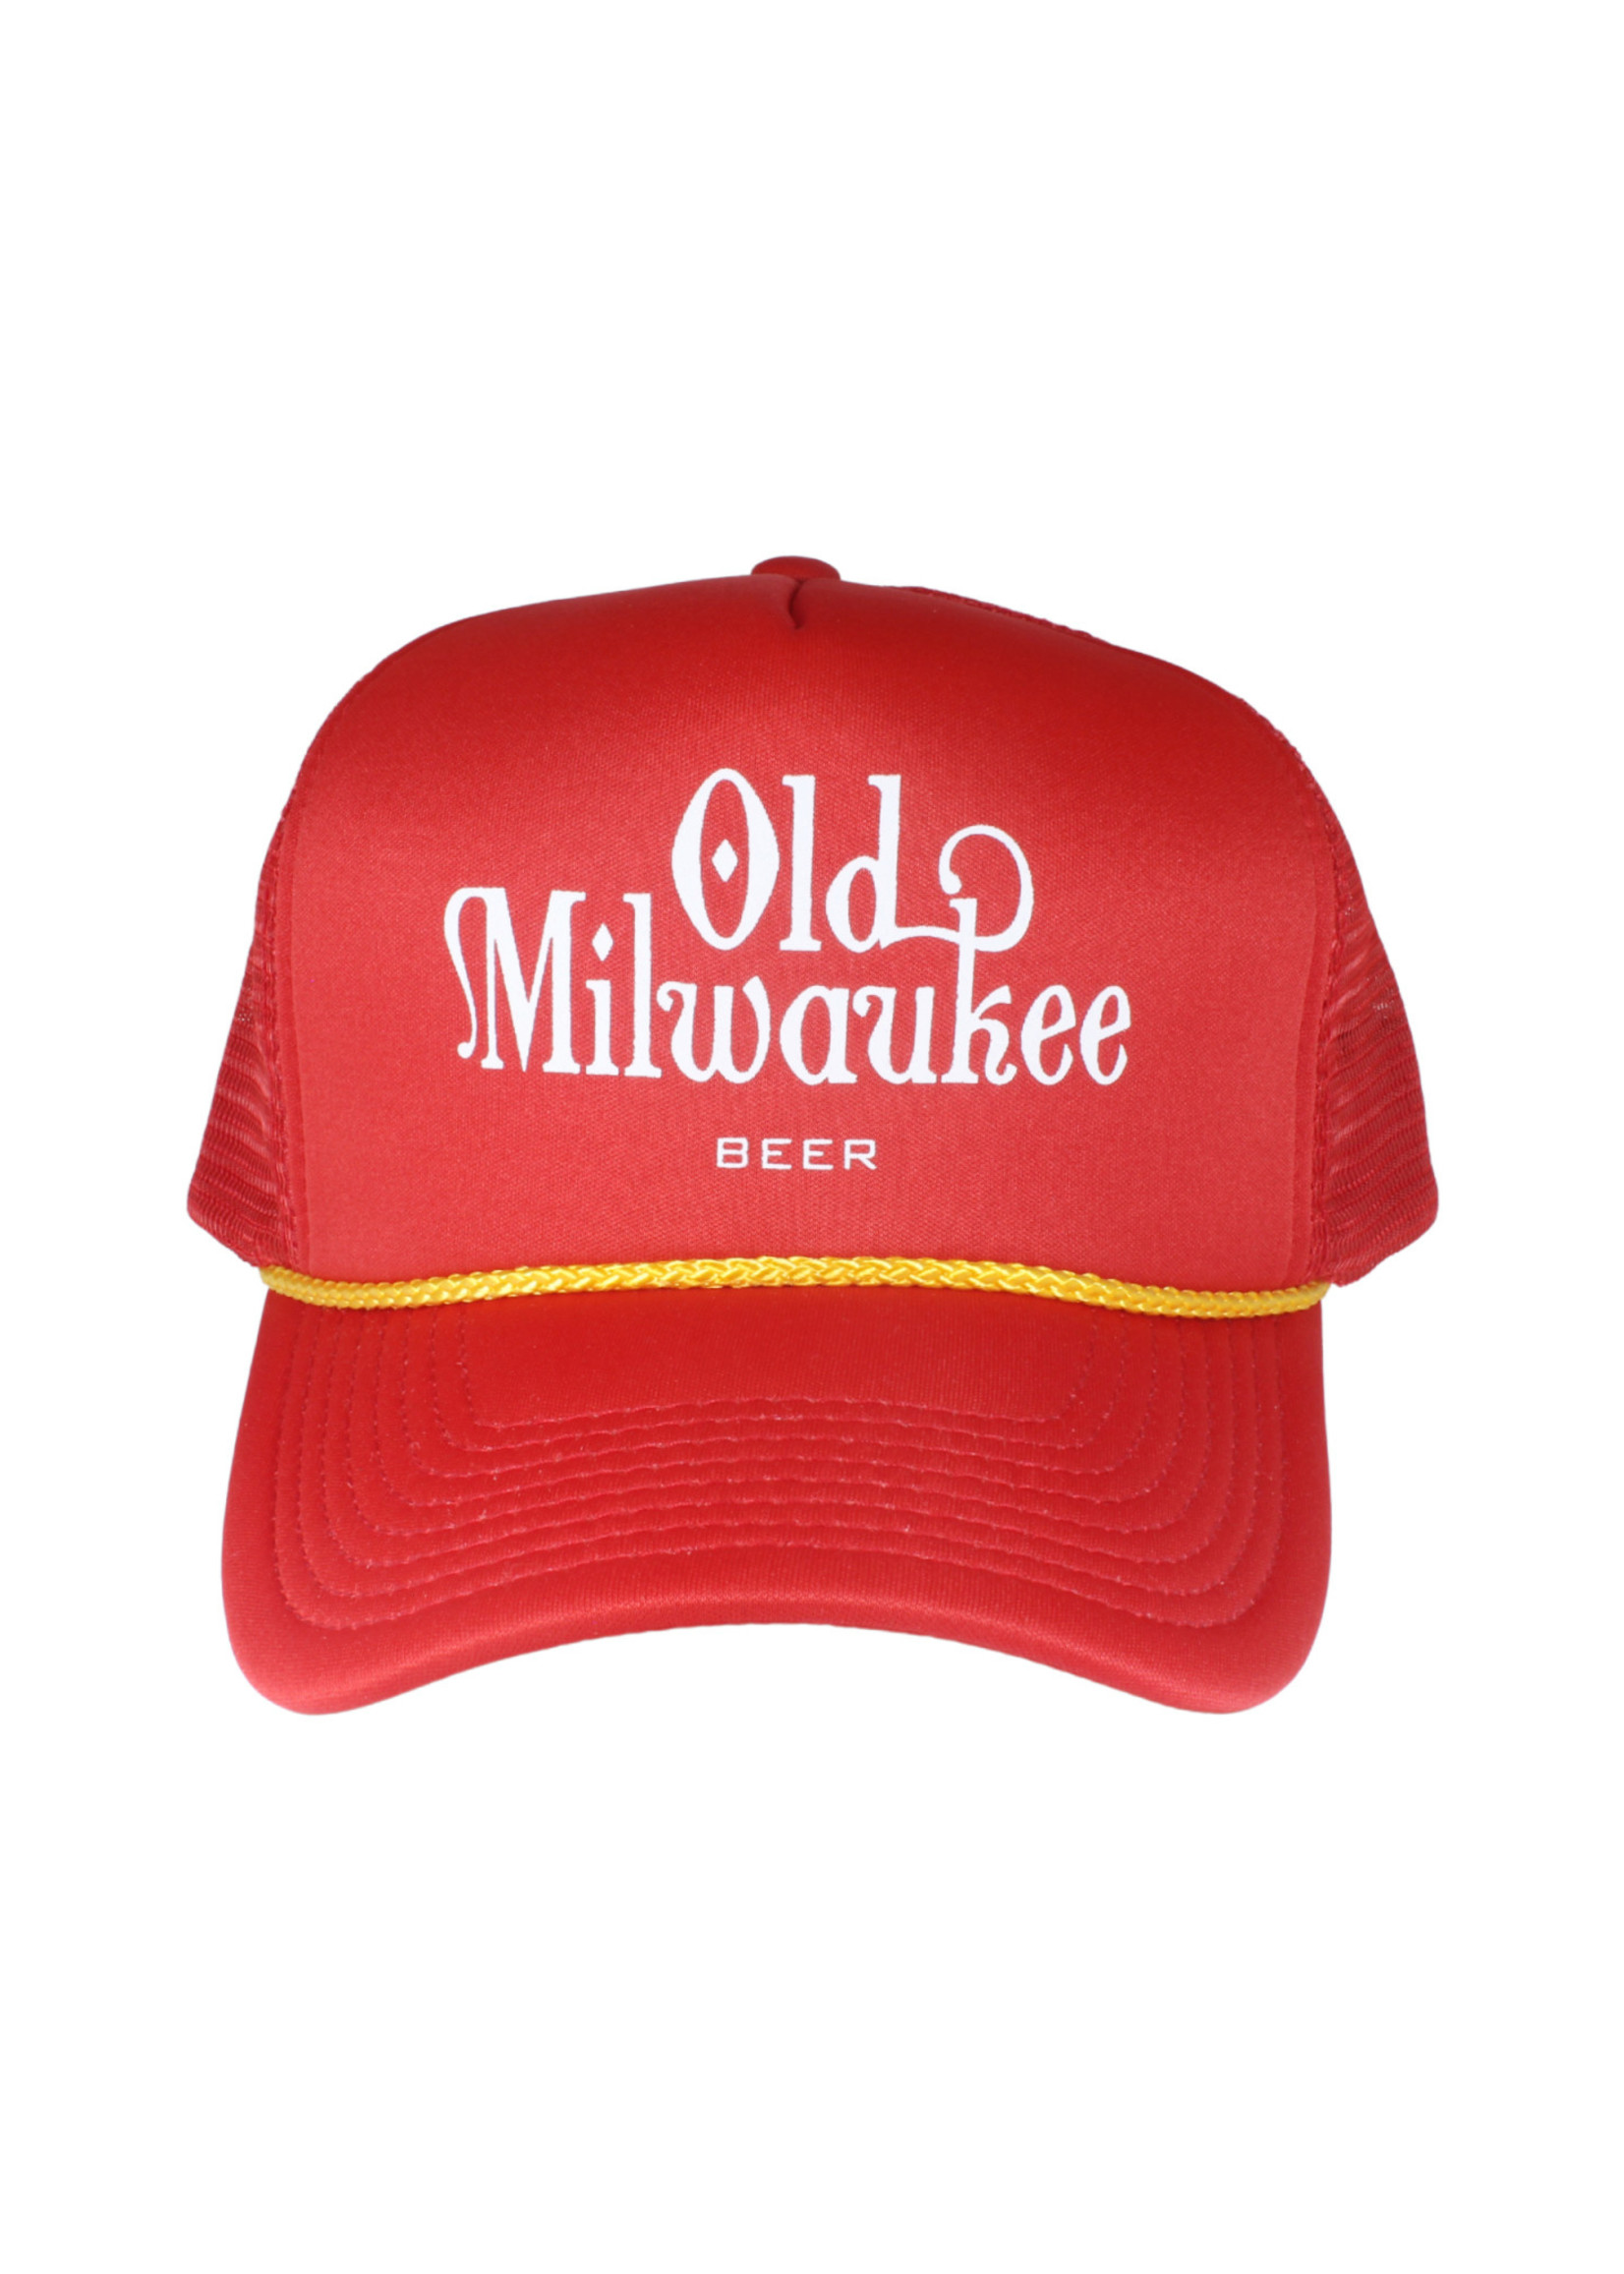 Old Milwaukee Old Milwaukee Red Trucker Hat